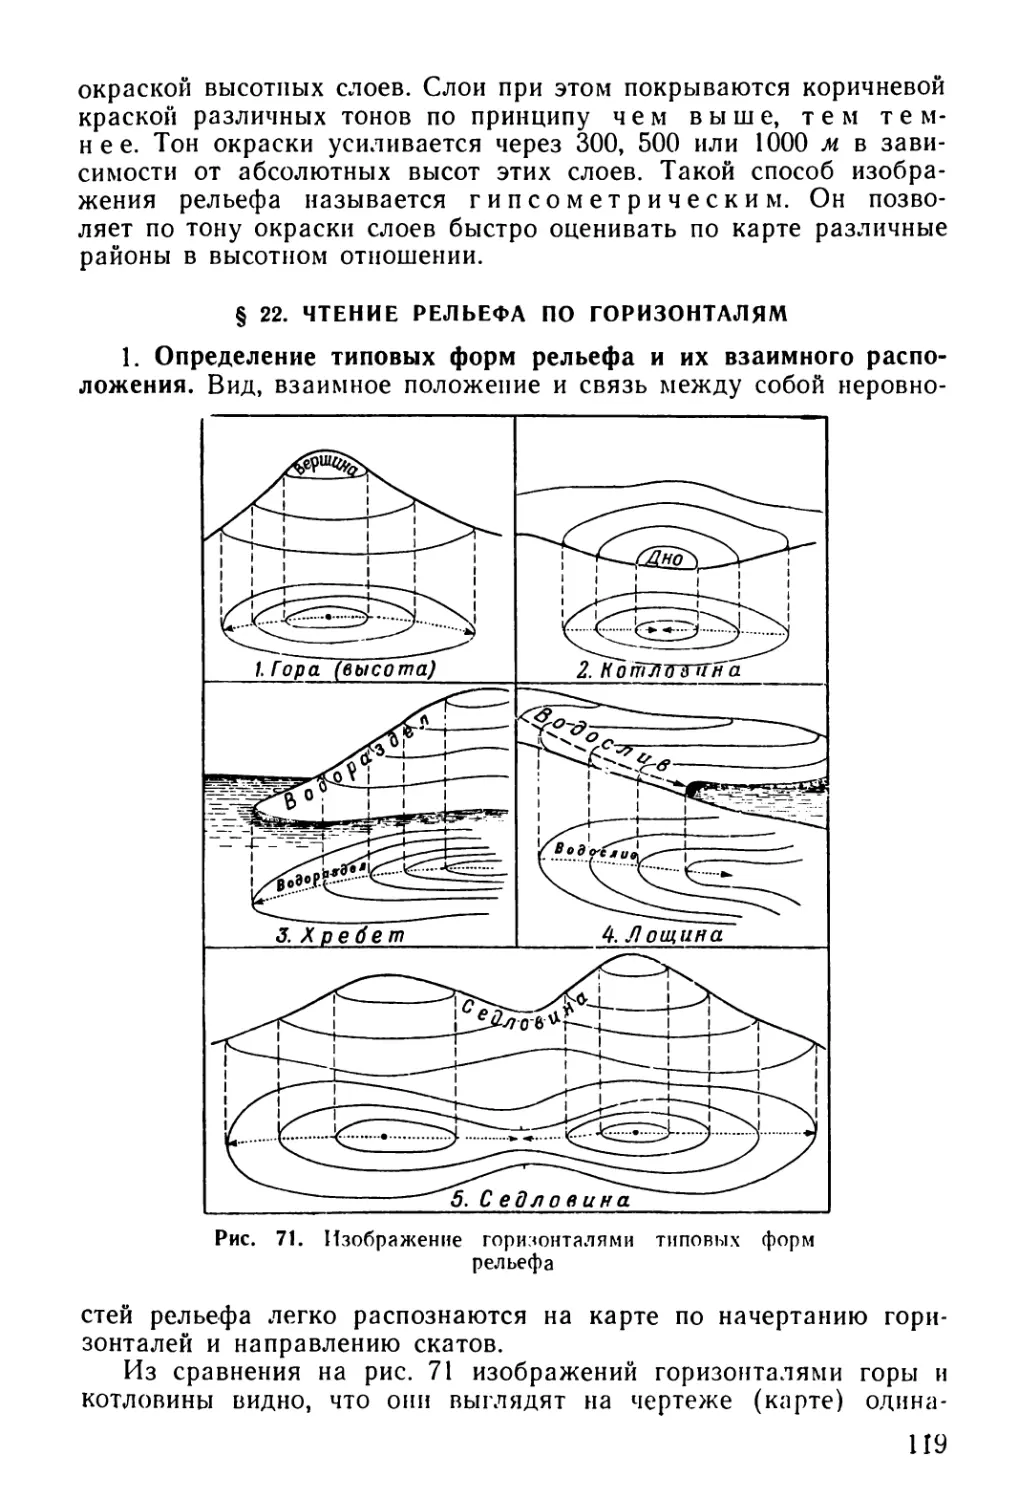 § 22. Чтение рельефа по горизонталям
1. Определение типовых форм рельефа и их взаимного расположения